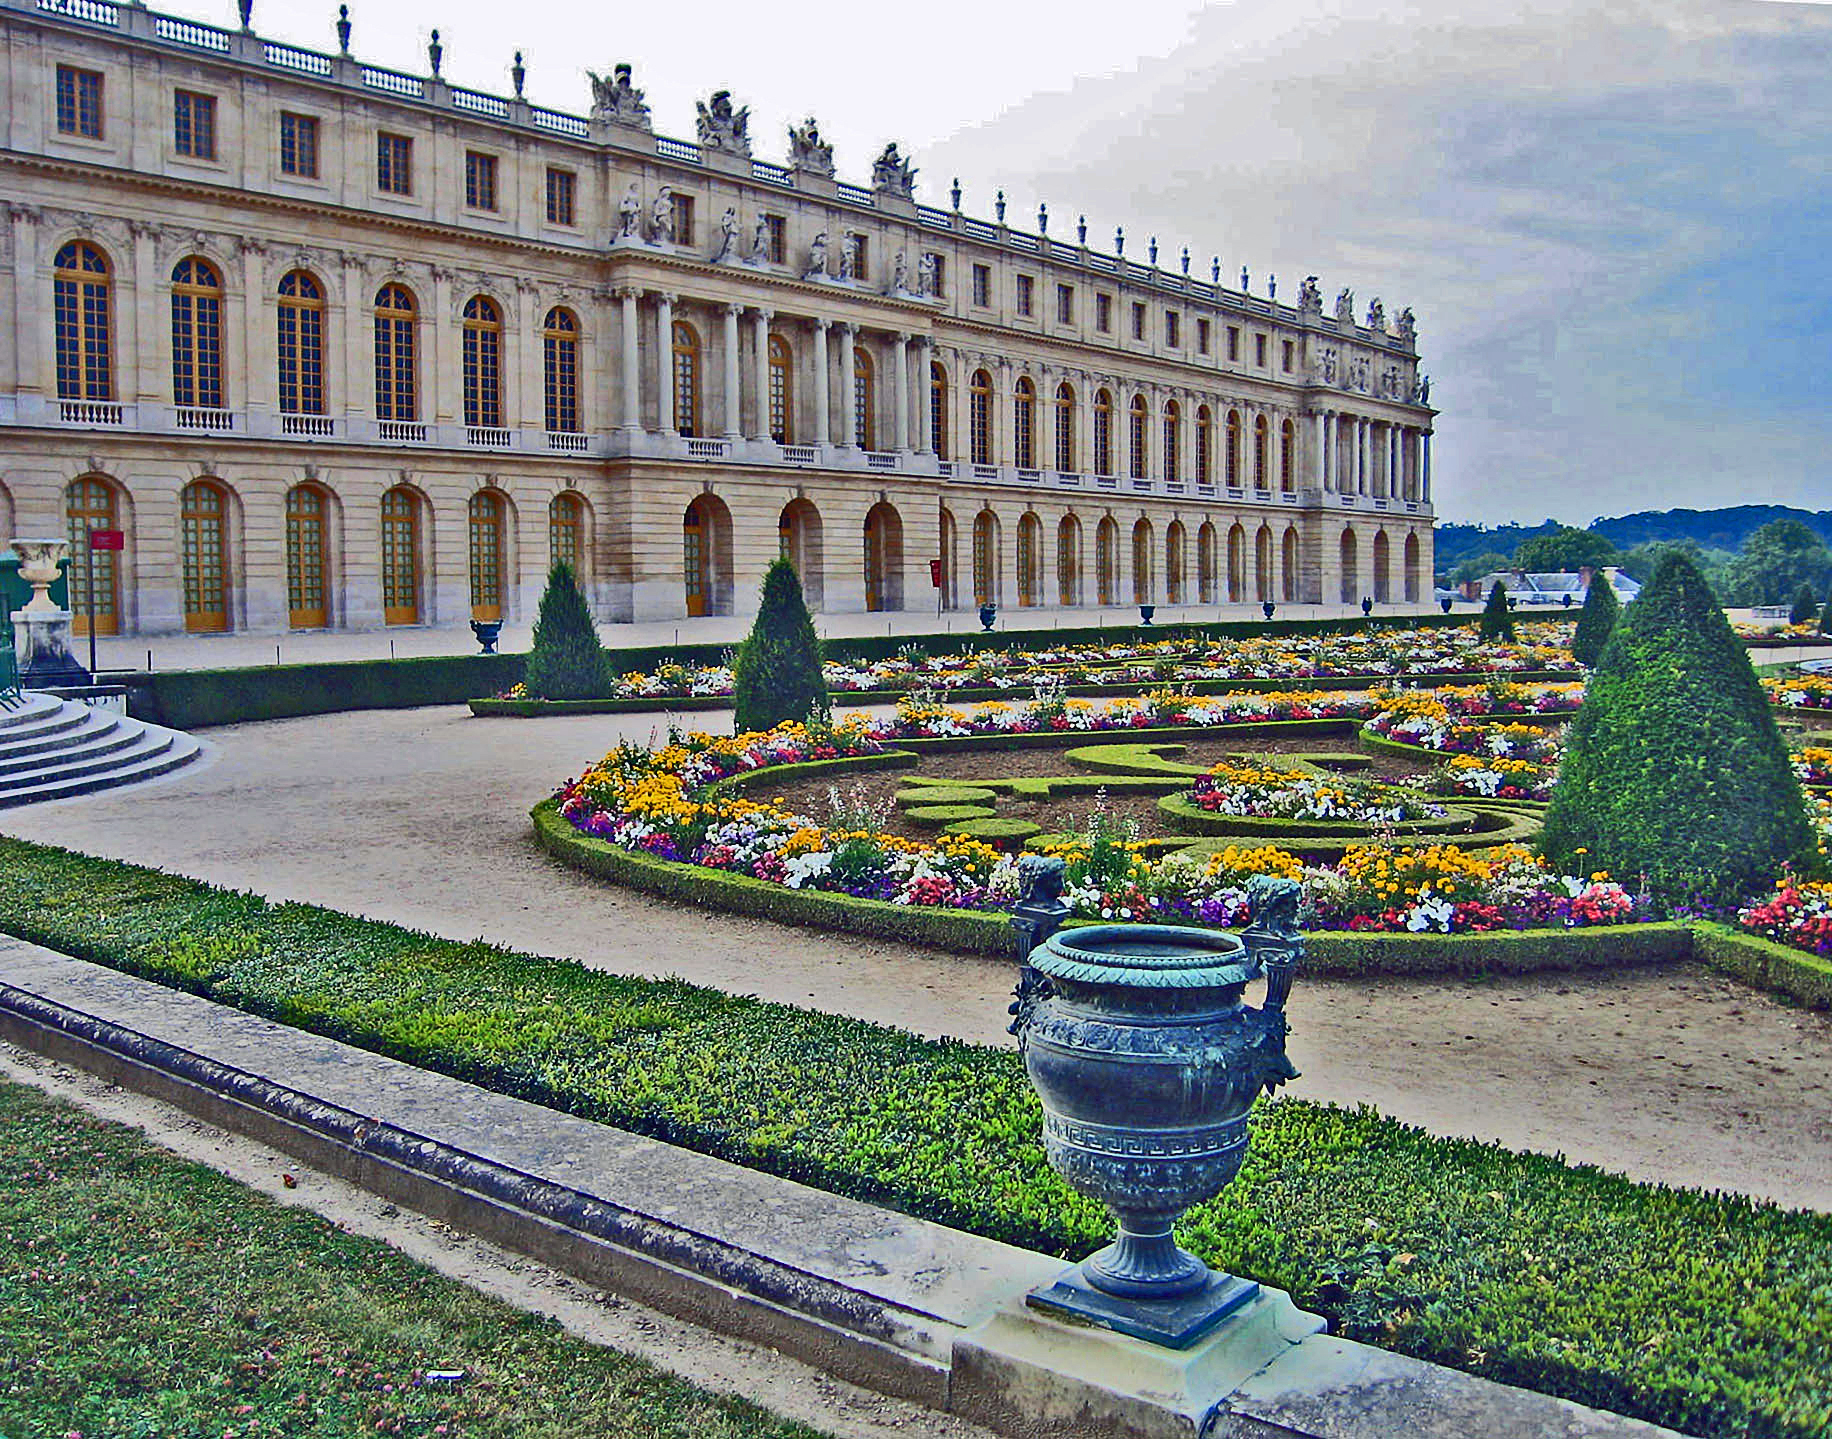 Версаль 78. Барокко. Королевский двор. Дворец и парк Версаля картина. Амфитеатр Версальский дворец Википедия.